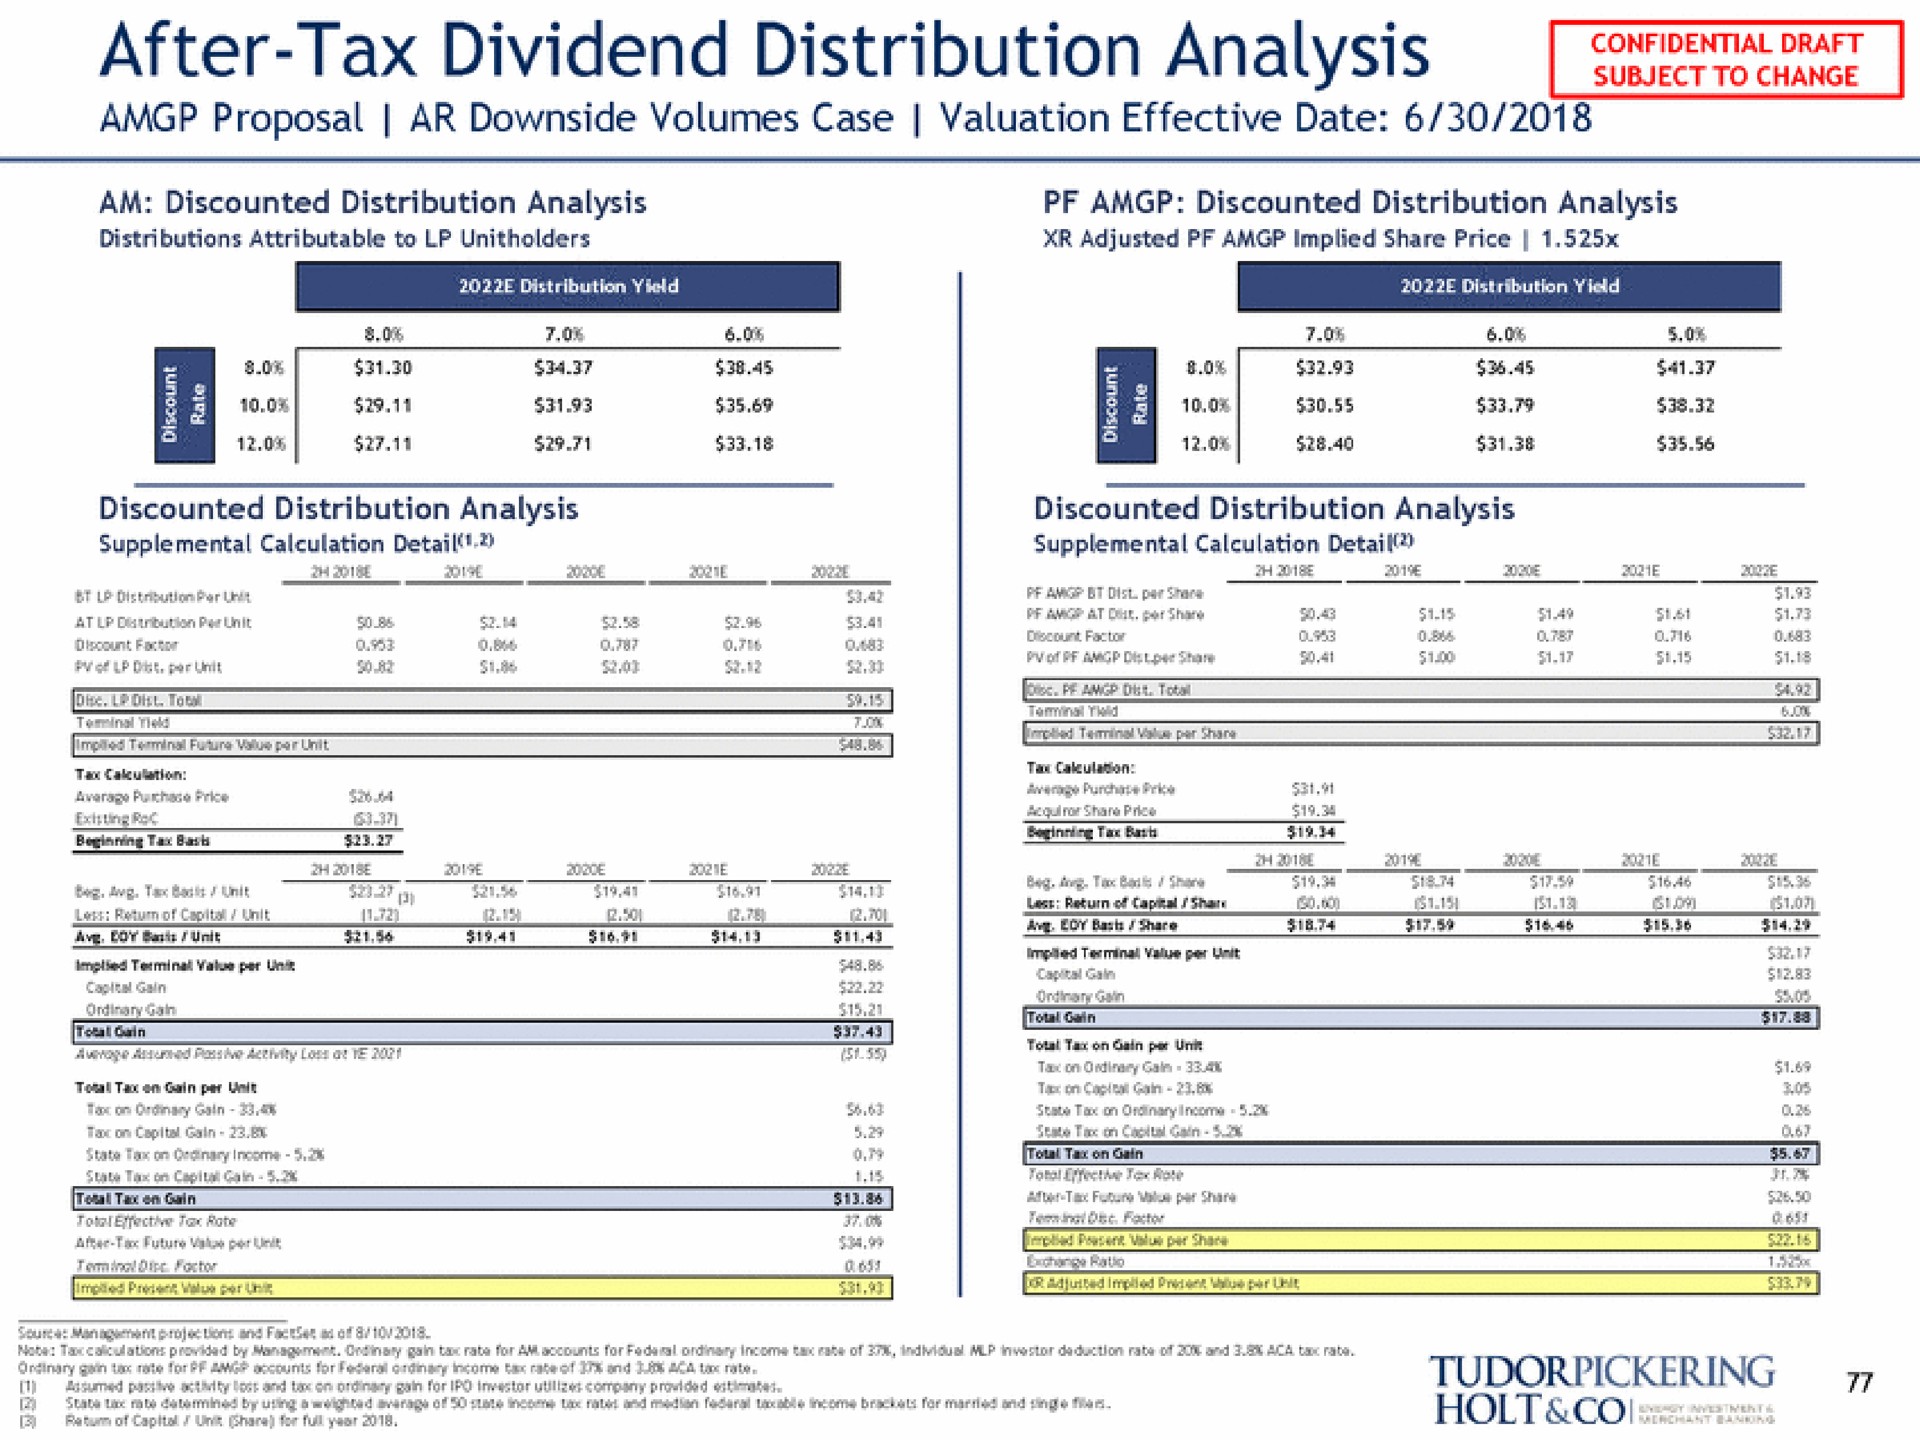 after tax dividend distribution scene ret holt | Tudor, Pickering, Holt & Co